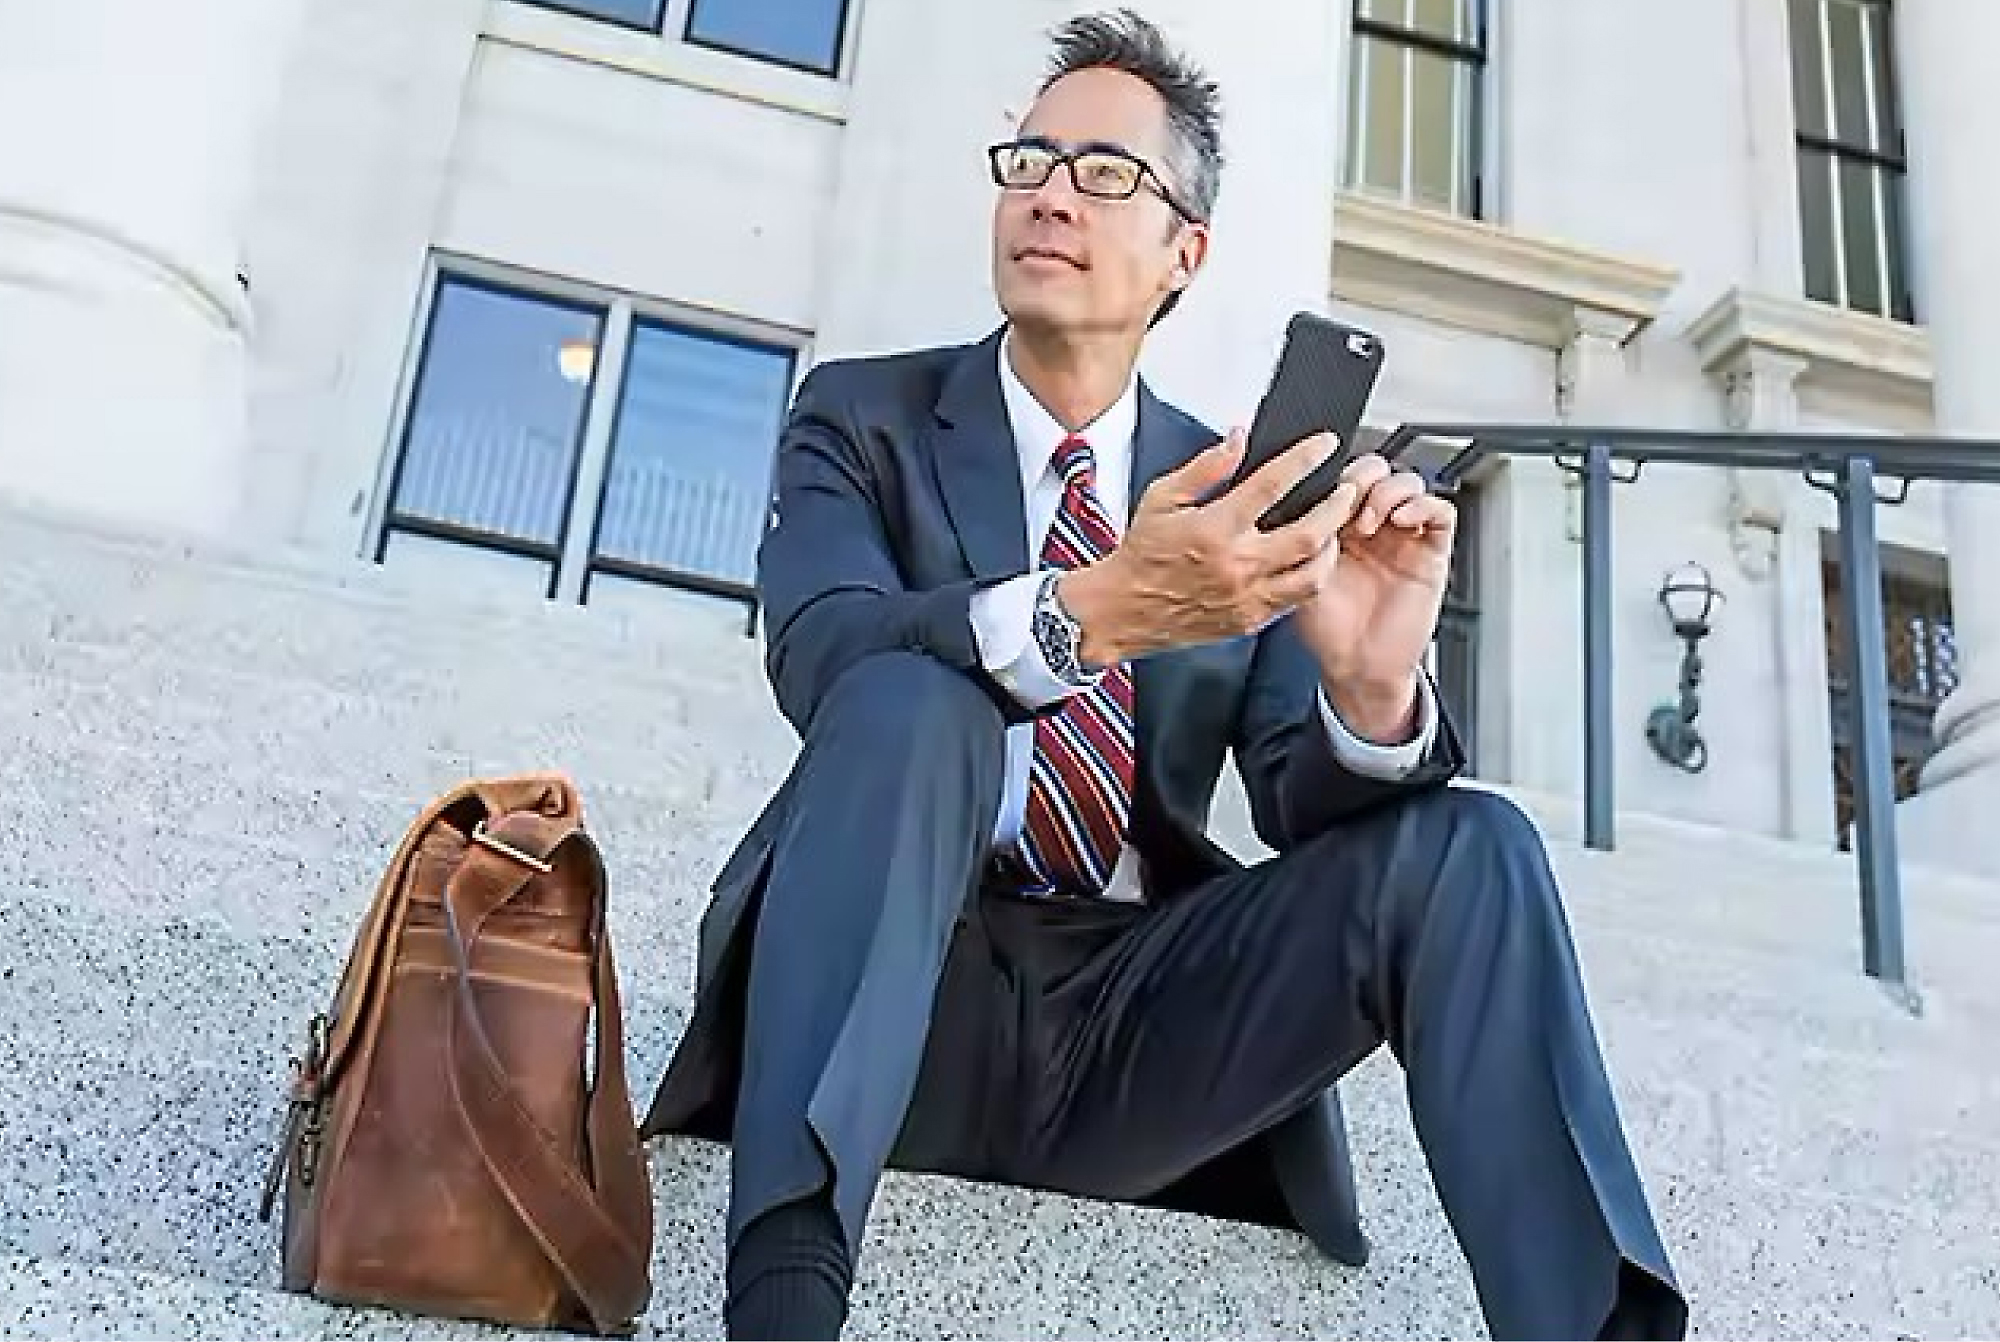 Ein vor einem Gebäude auf einer Treppe sitzender Geschäftsmann in einem Anzug und Brille mit einer Ledertasche neben ihm, der sein Smartphone verwendet.